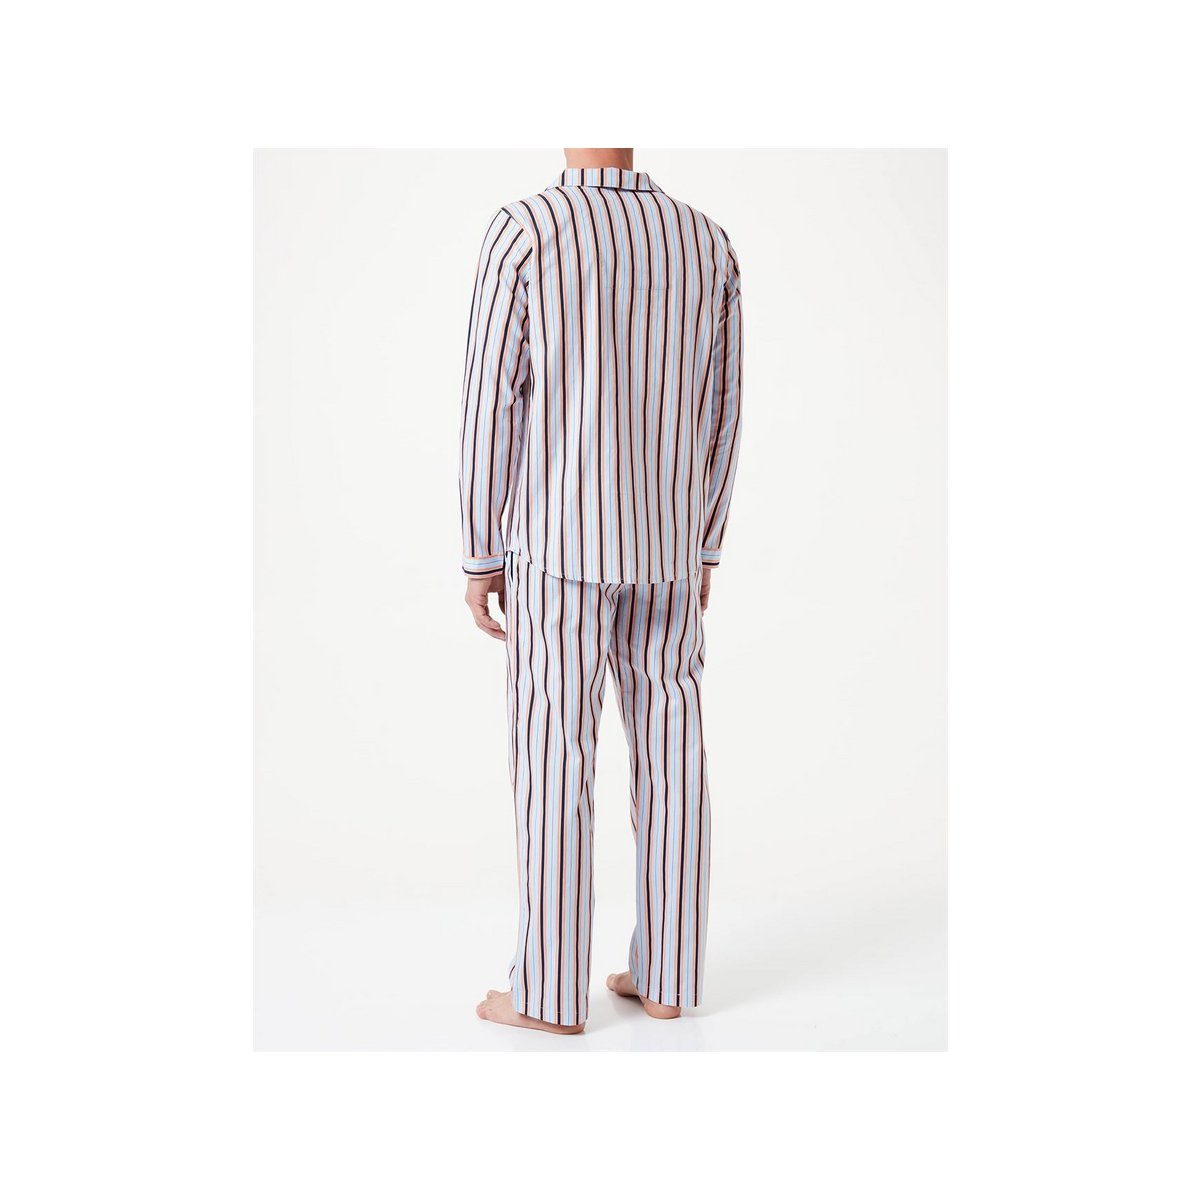 Schiesser Pyjama uni (1 tlg)